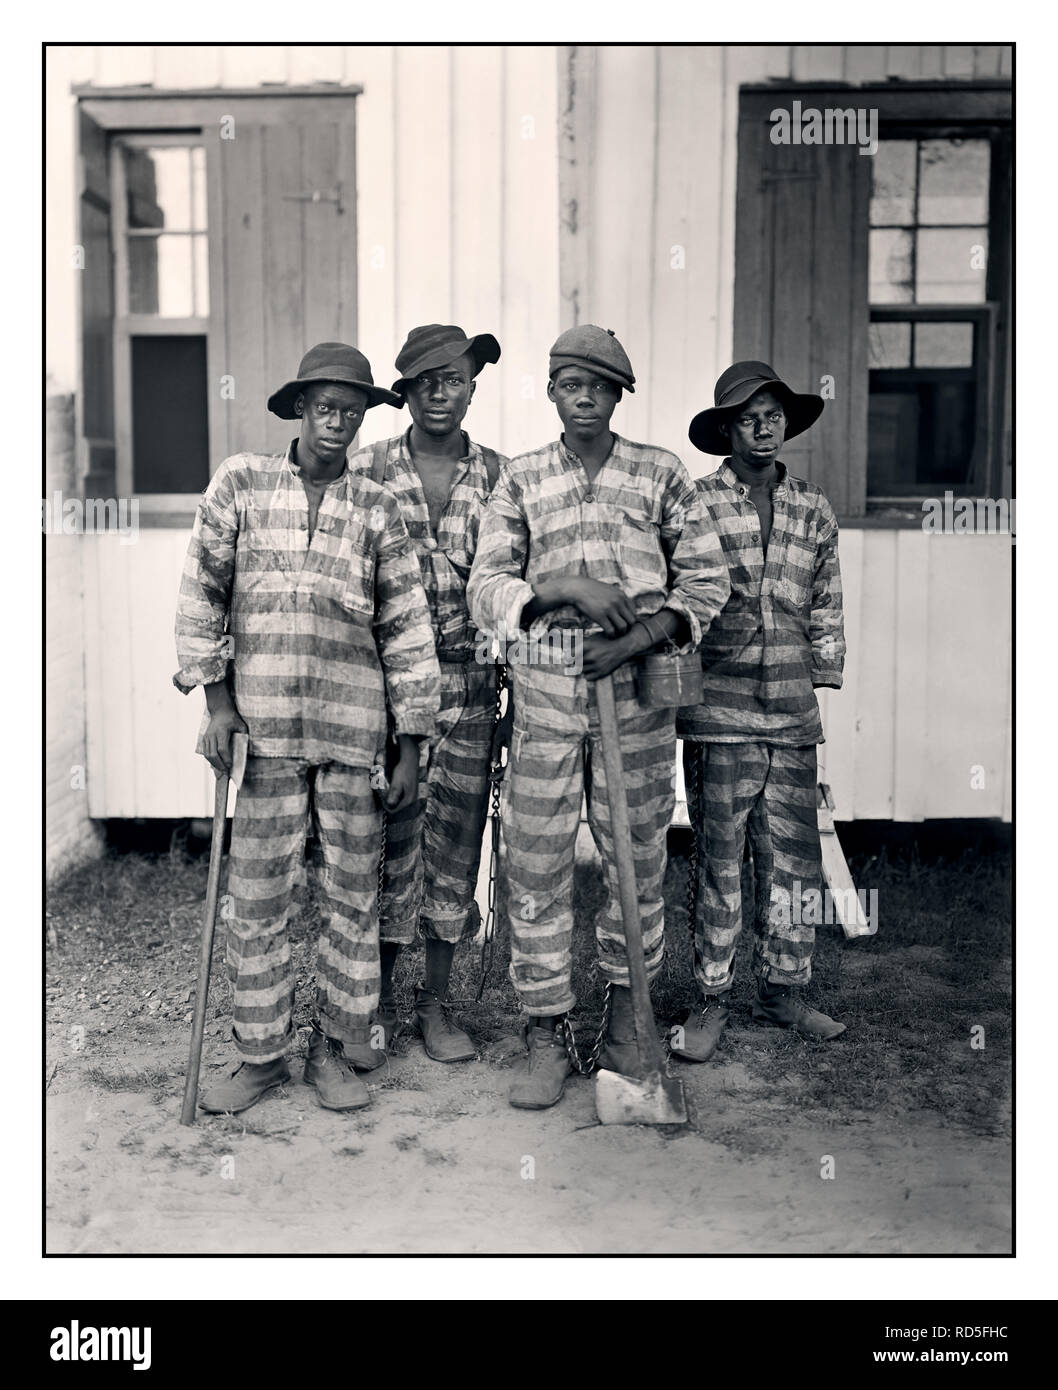 Eine südliche Chain Gang Gruppe von schwarzen amerikanischen Gefangenen in gestreifte Gefängnis Uniformen mit Taille und Knöchel Ketten c1900 USA Stockfoto